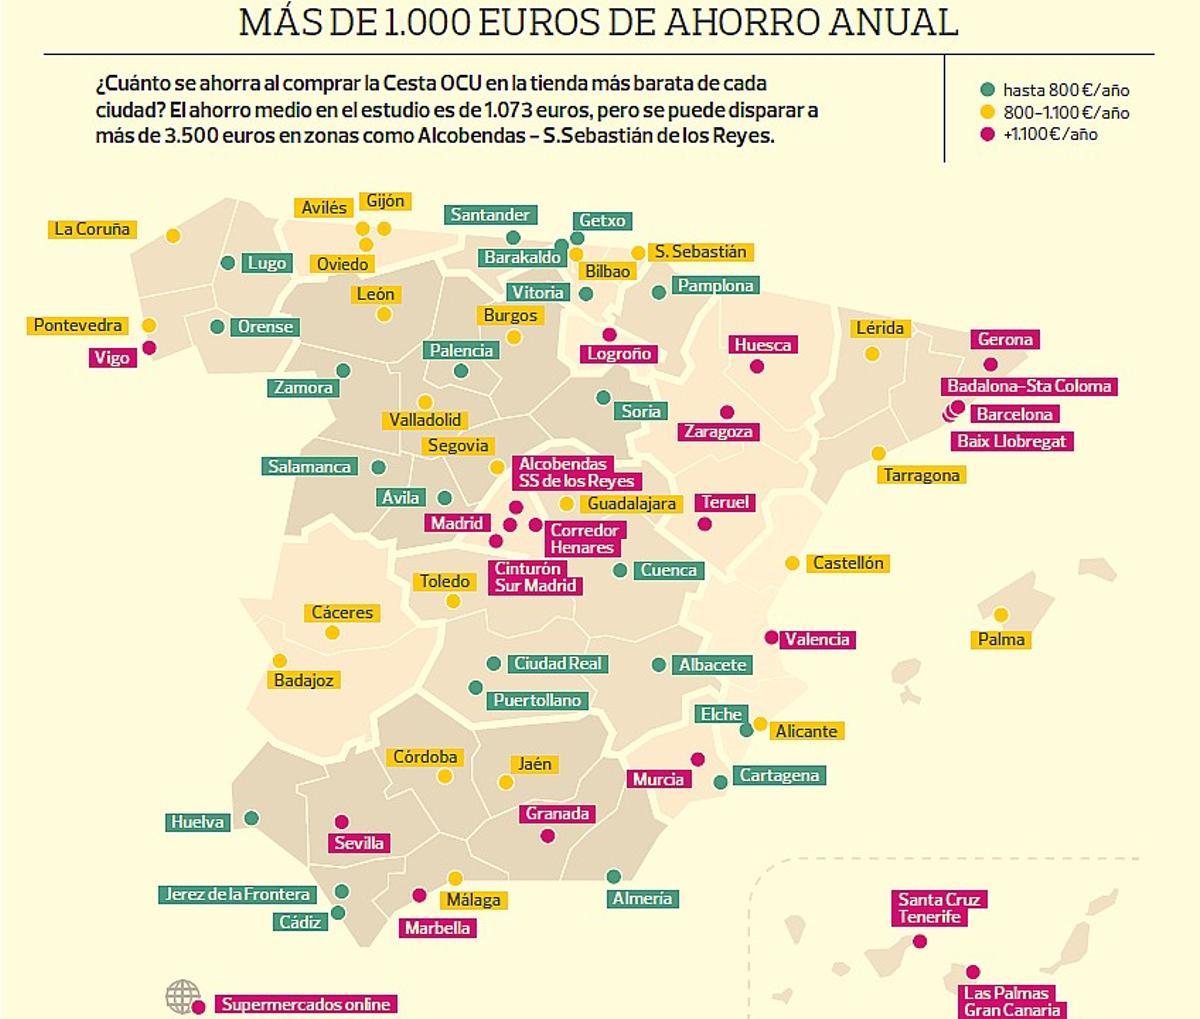 El máximo ahorro posible en España en las ciudades, según la OCU.